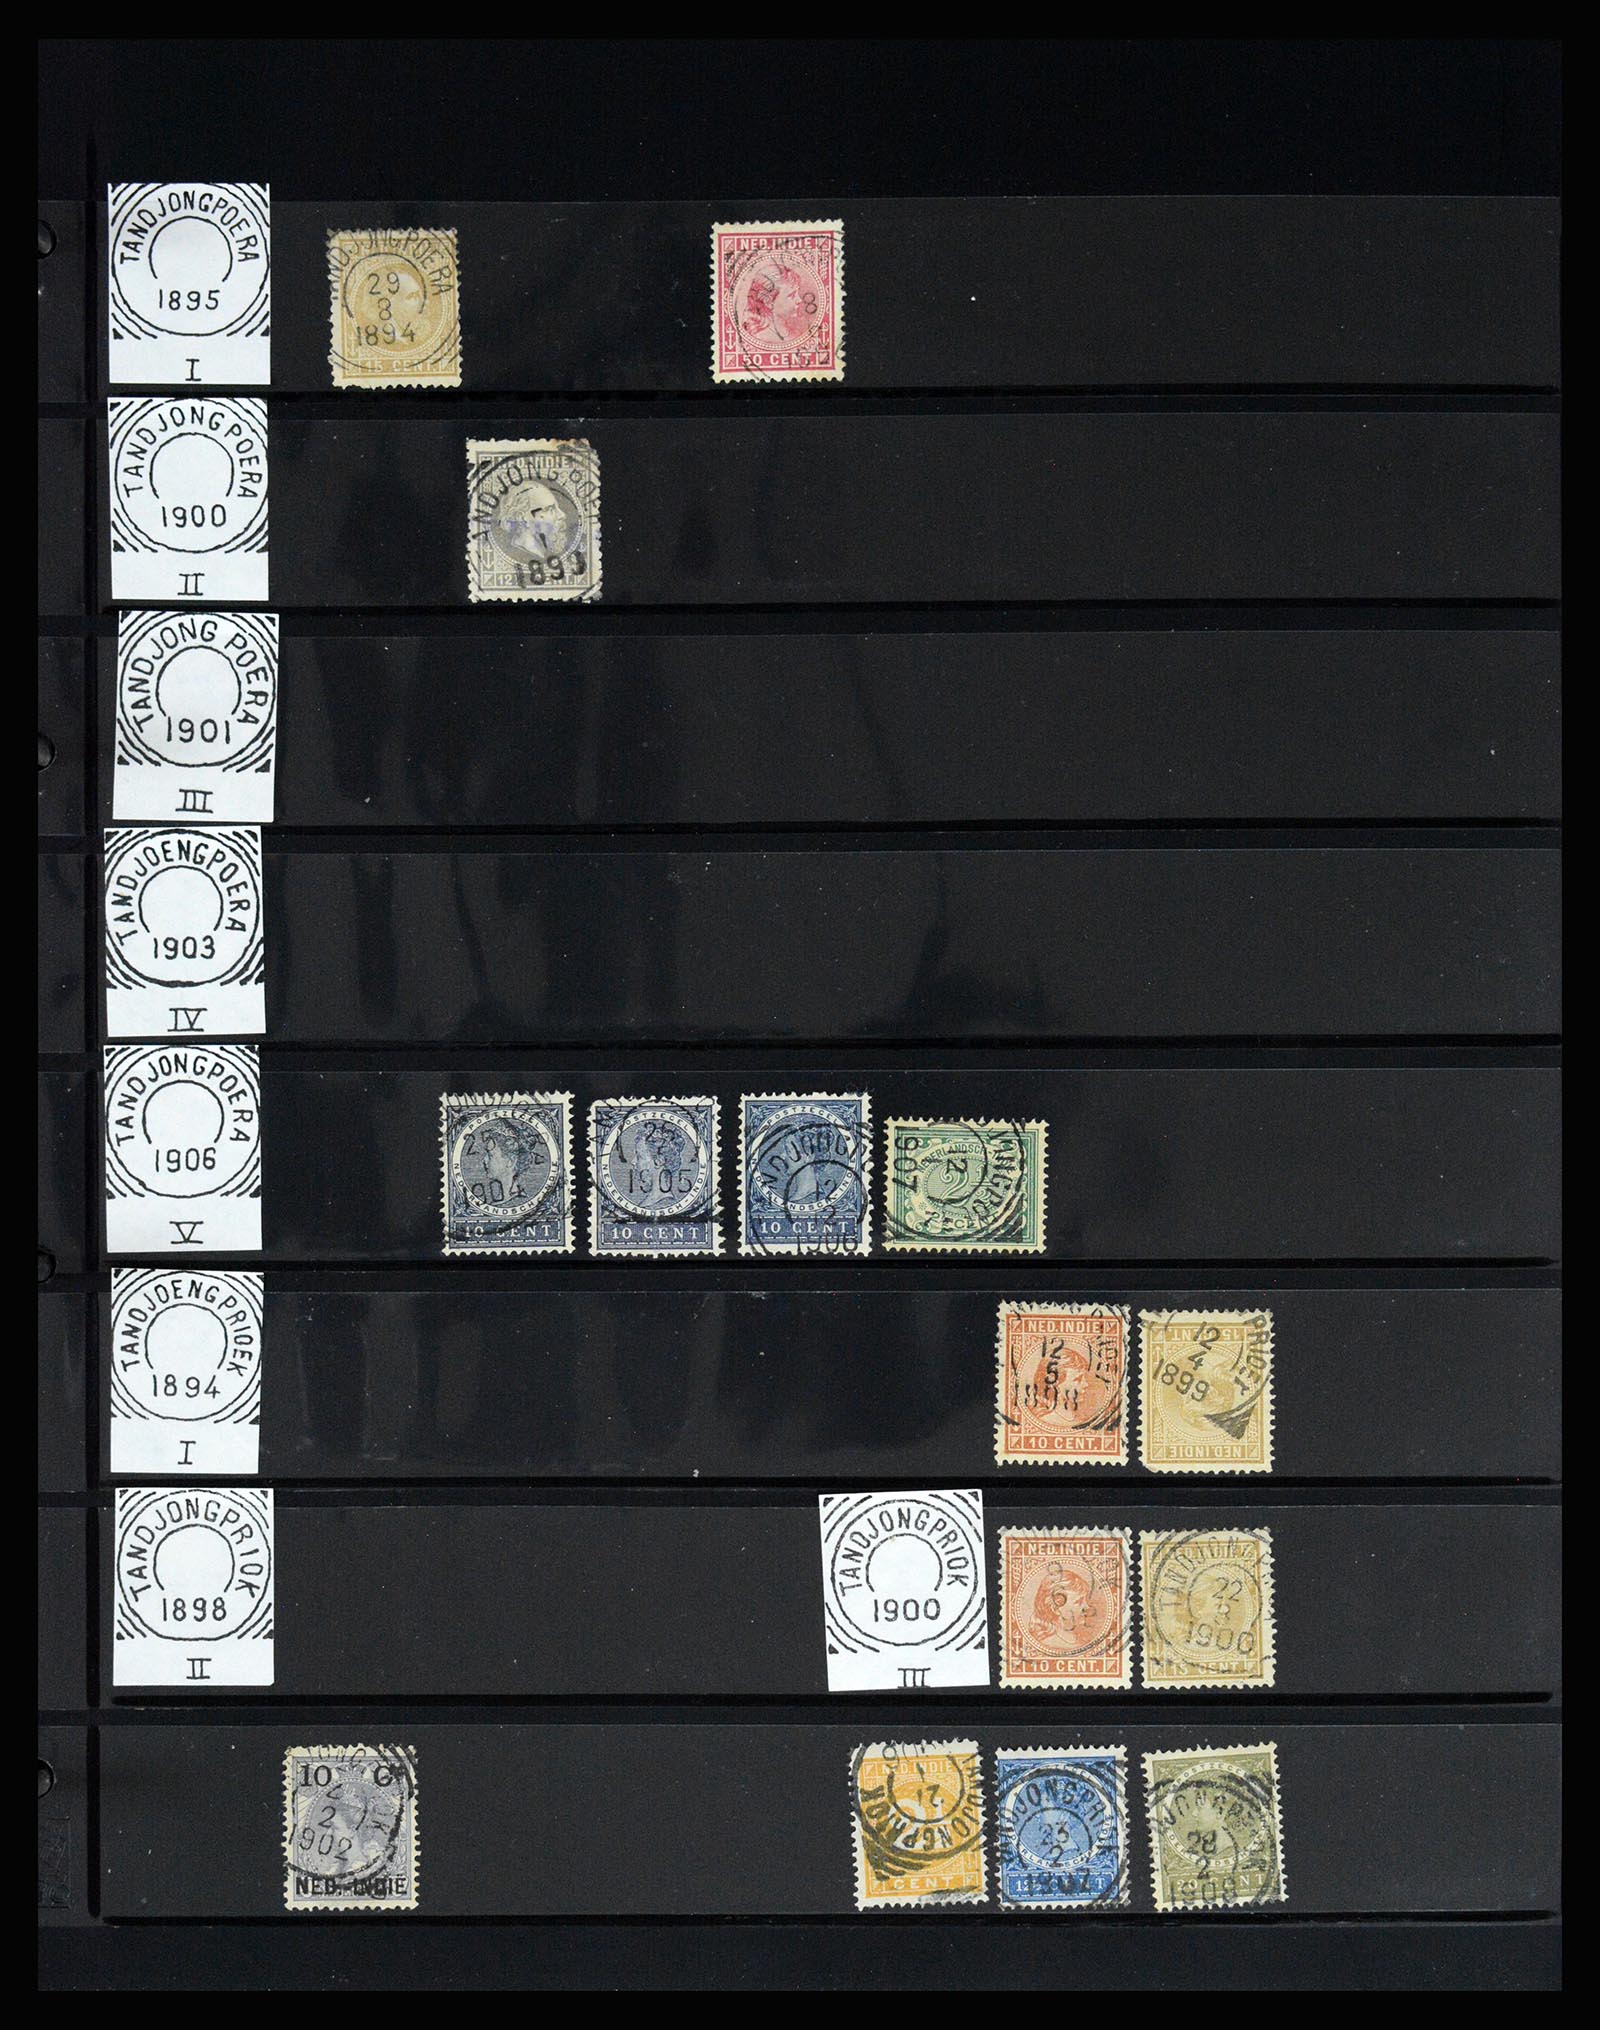 36512 154 - Stamp collection 36512 Nederlands Indië stempels 1872-1930.